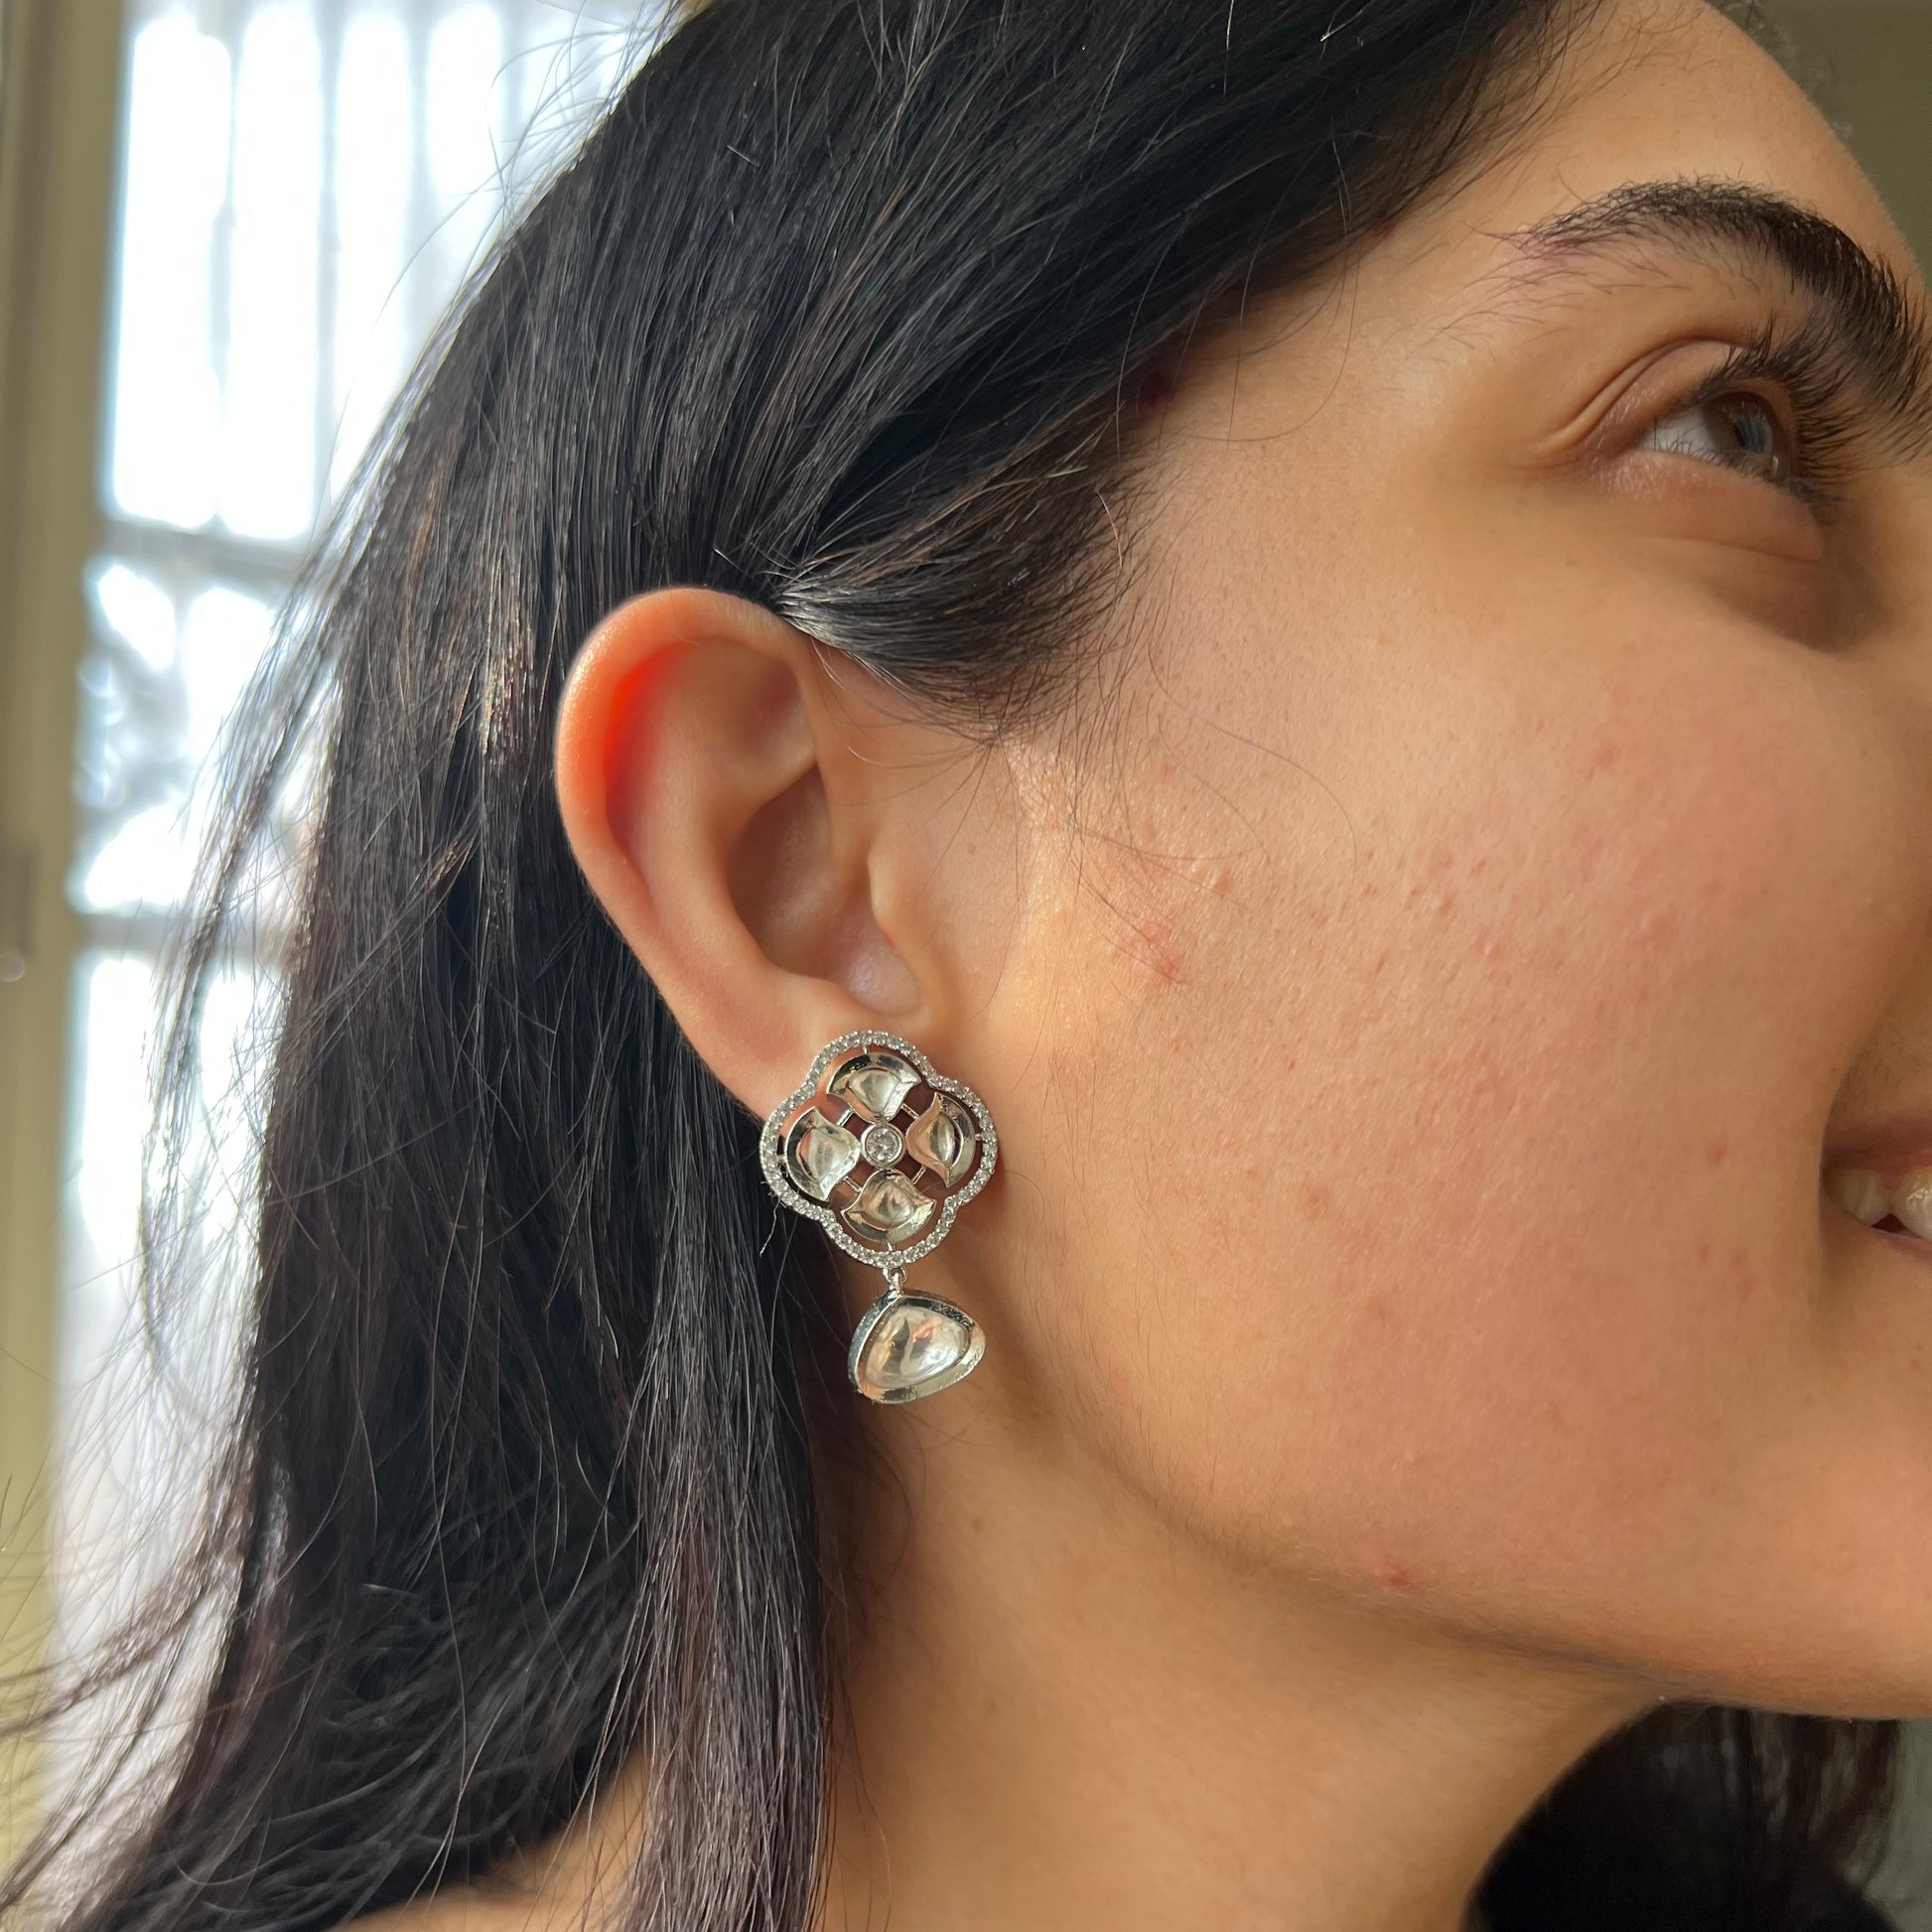 Double Sided Stone Stud Earrings